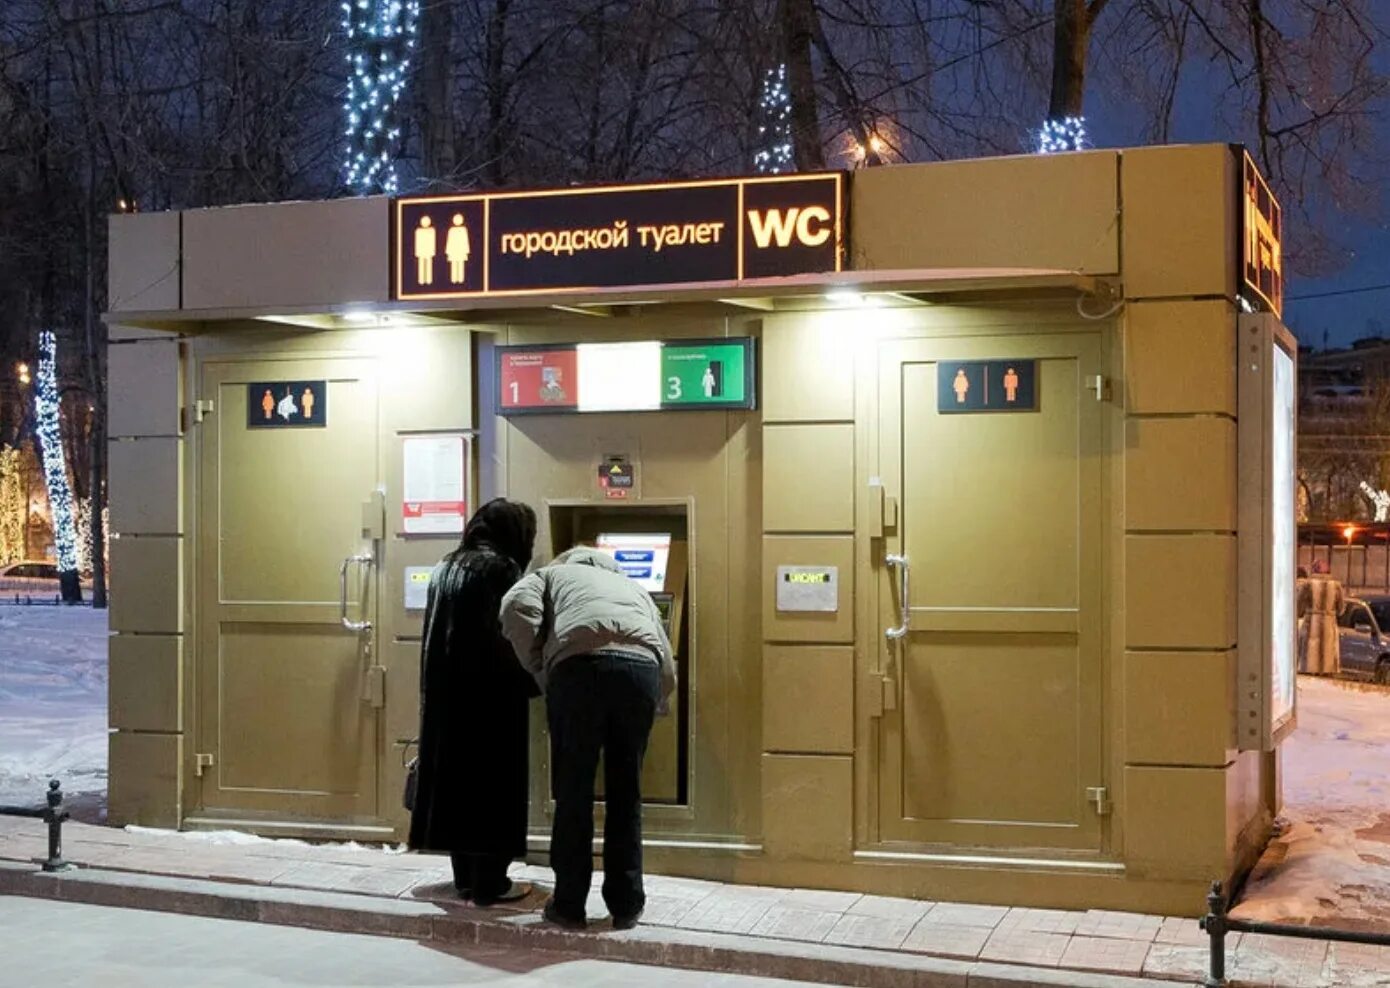 Должны ли туалеты для посетителей быть оборудованы. Городской туалет. Городской общественный туалет. Общественные туалеты в Москве. Городской туалет Москва.